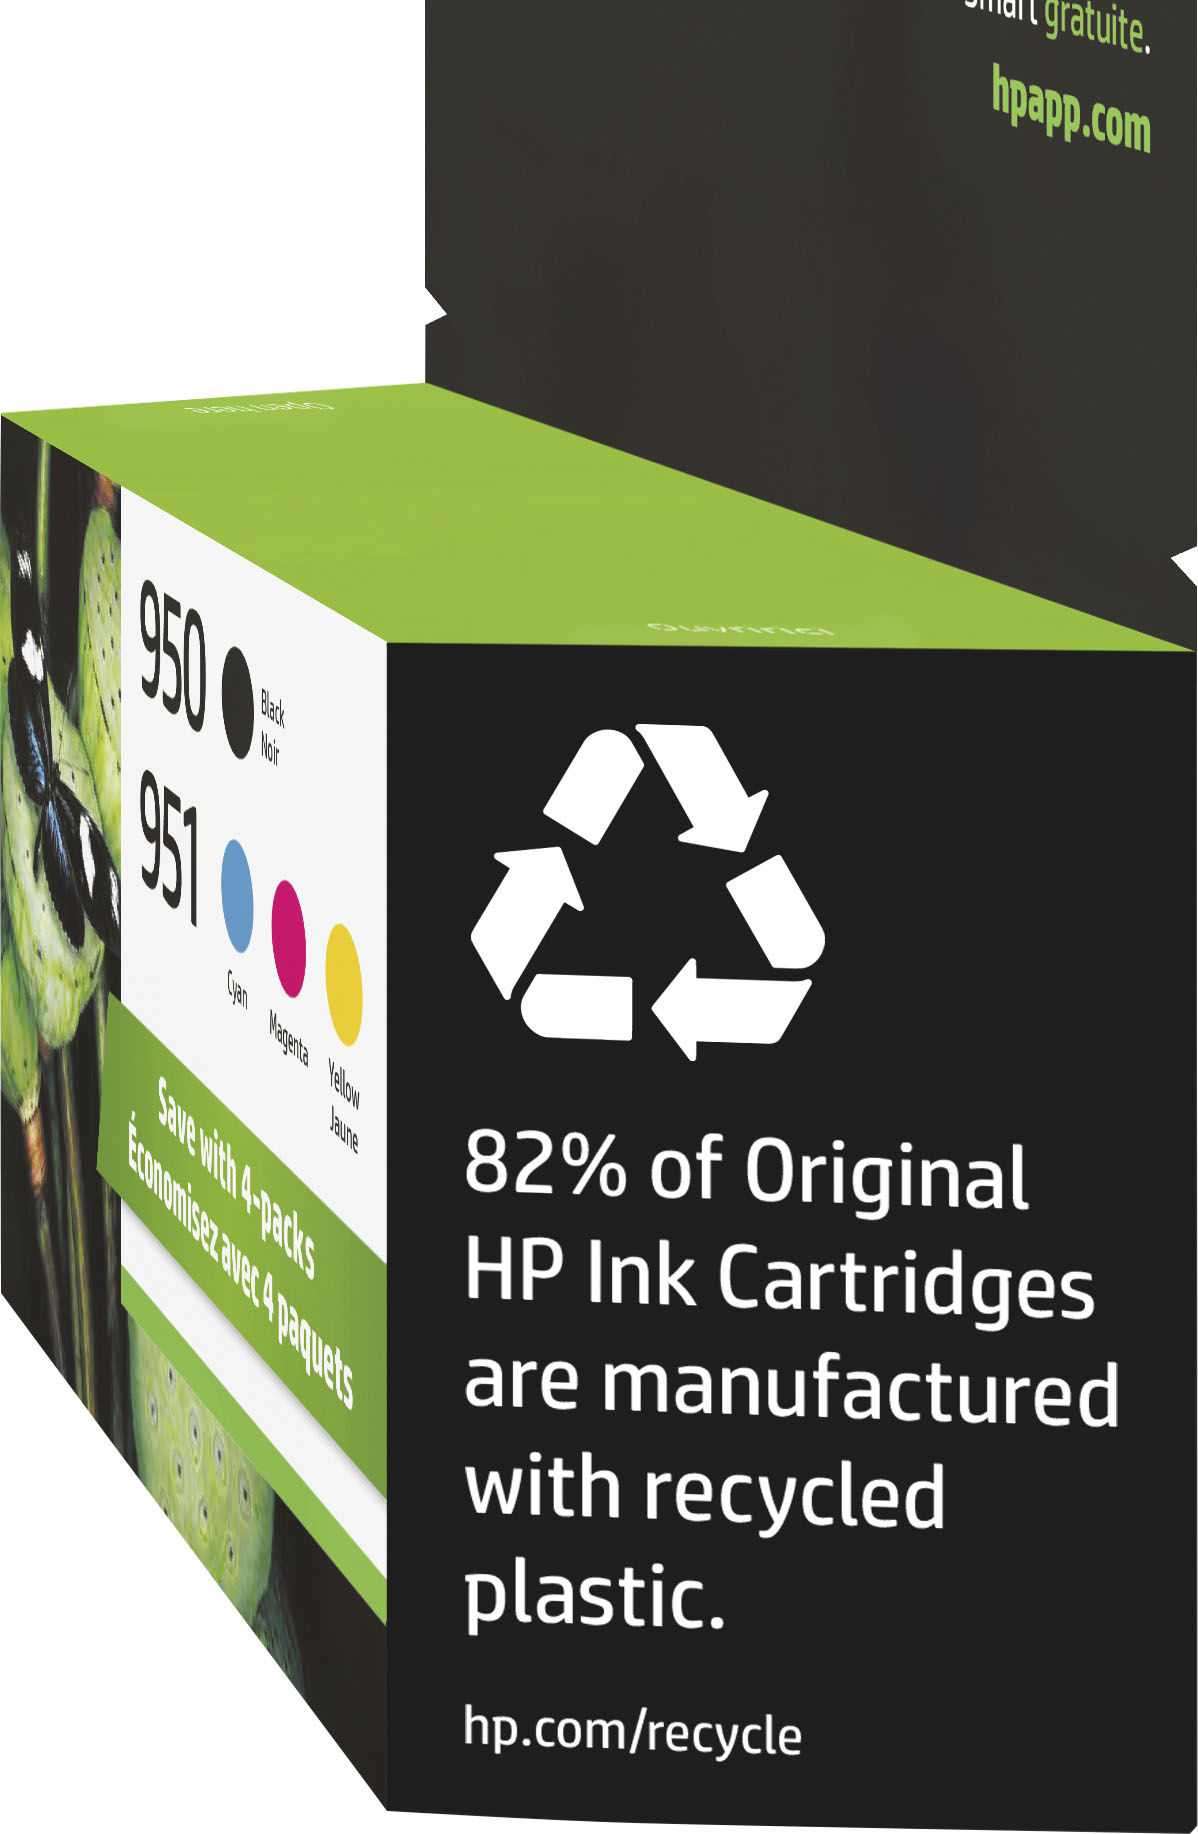 HP 950/951 - pack de 4 - noir et couleurs - cartouche d'encre